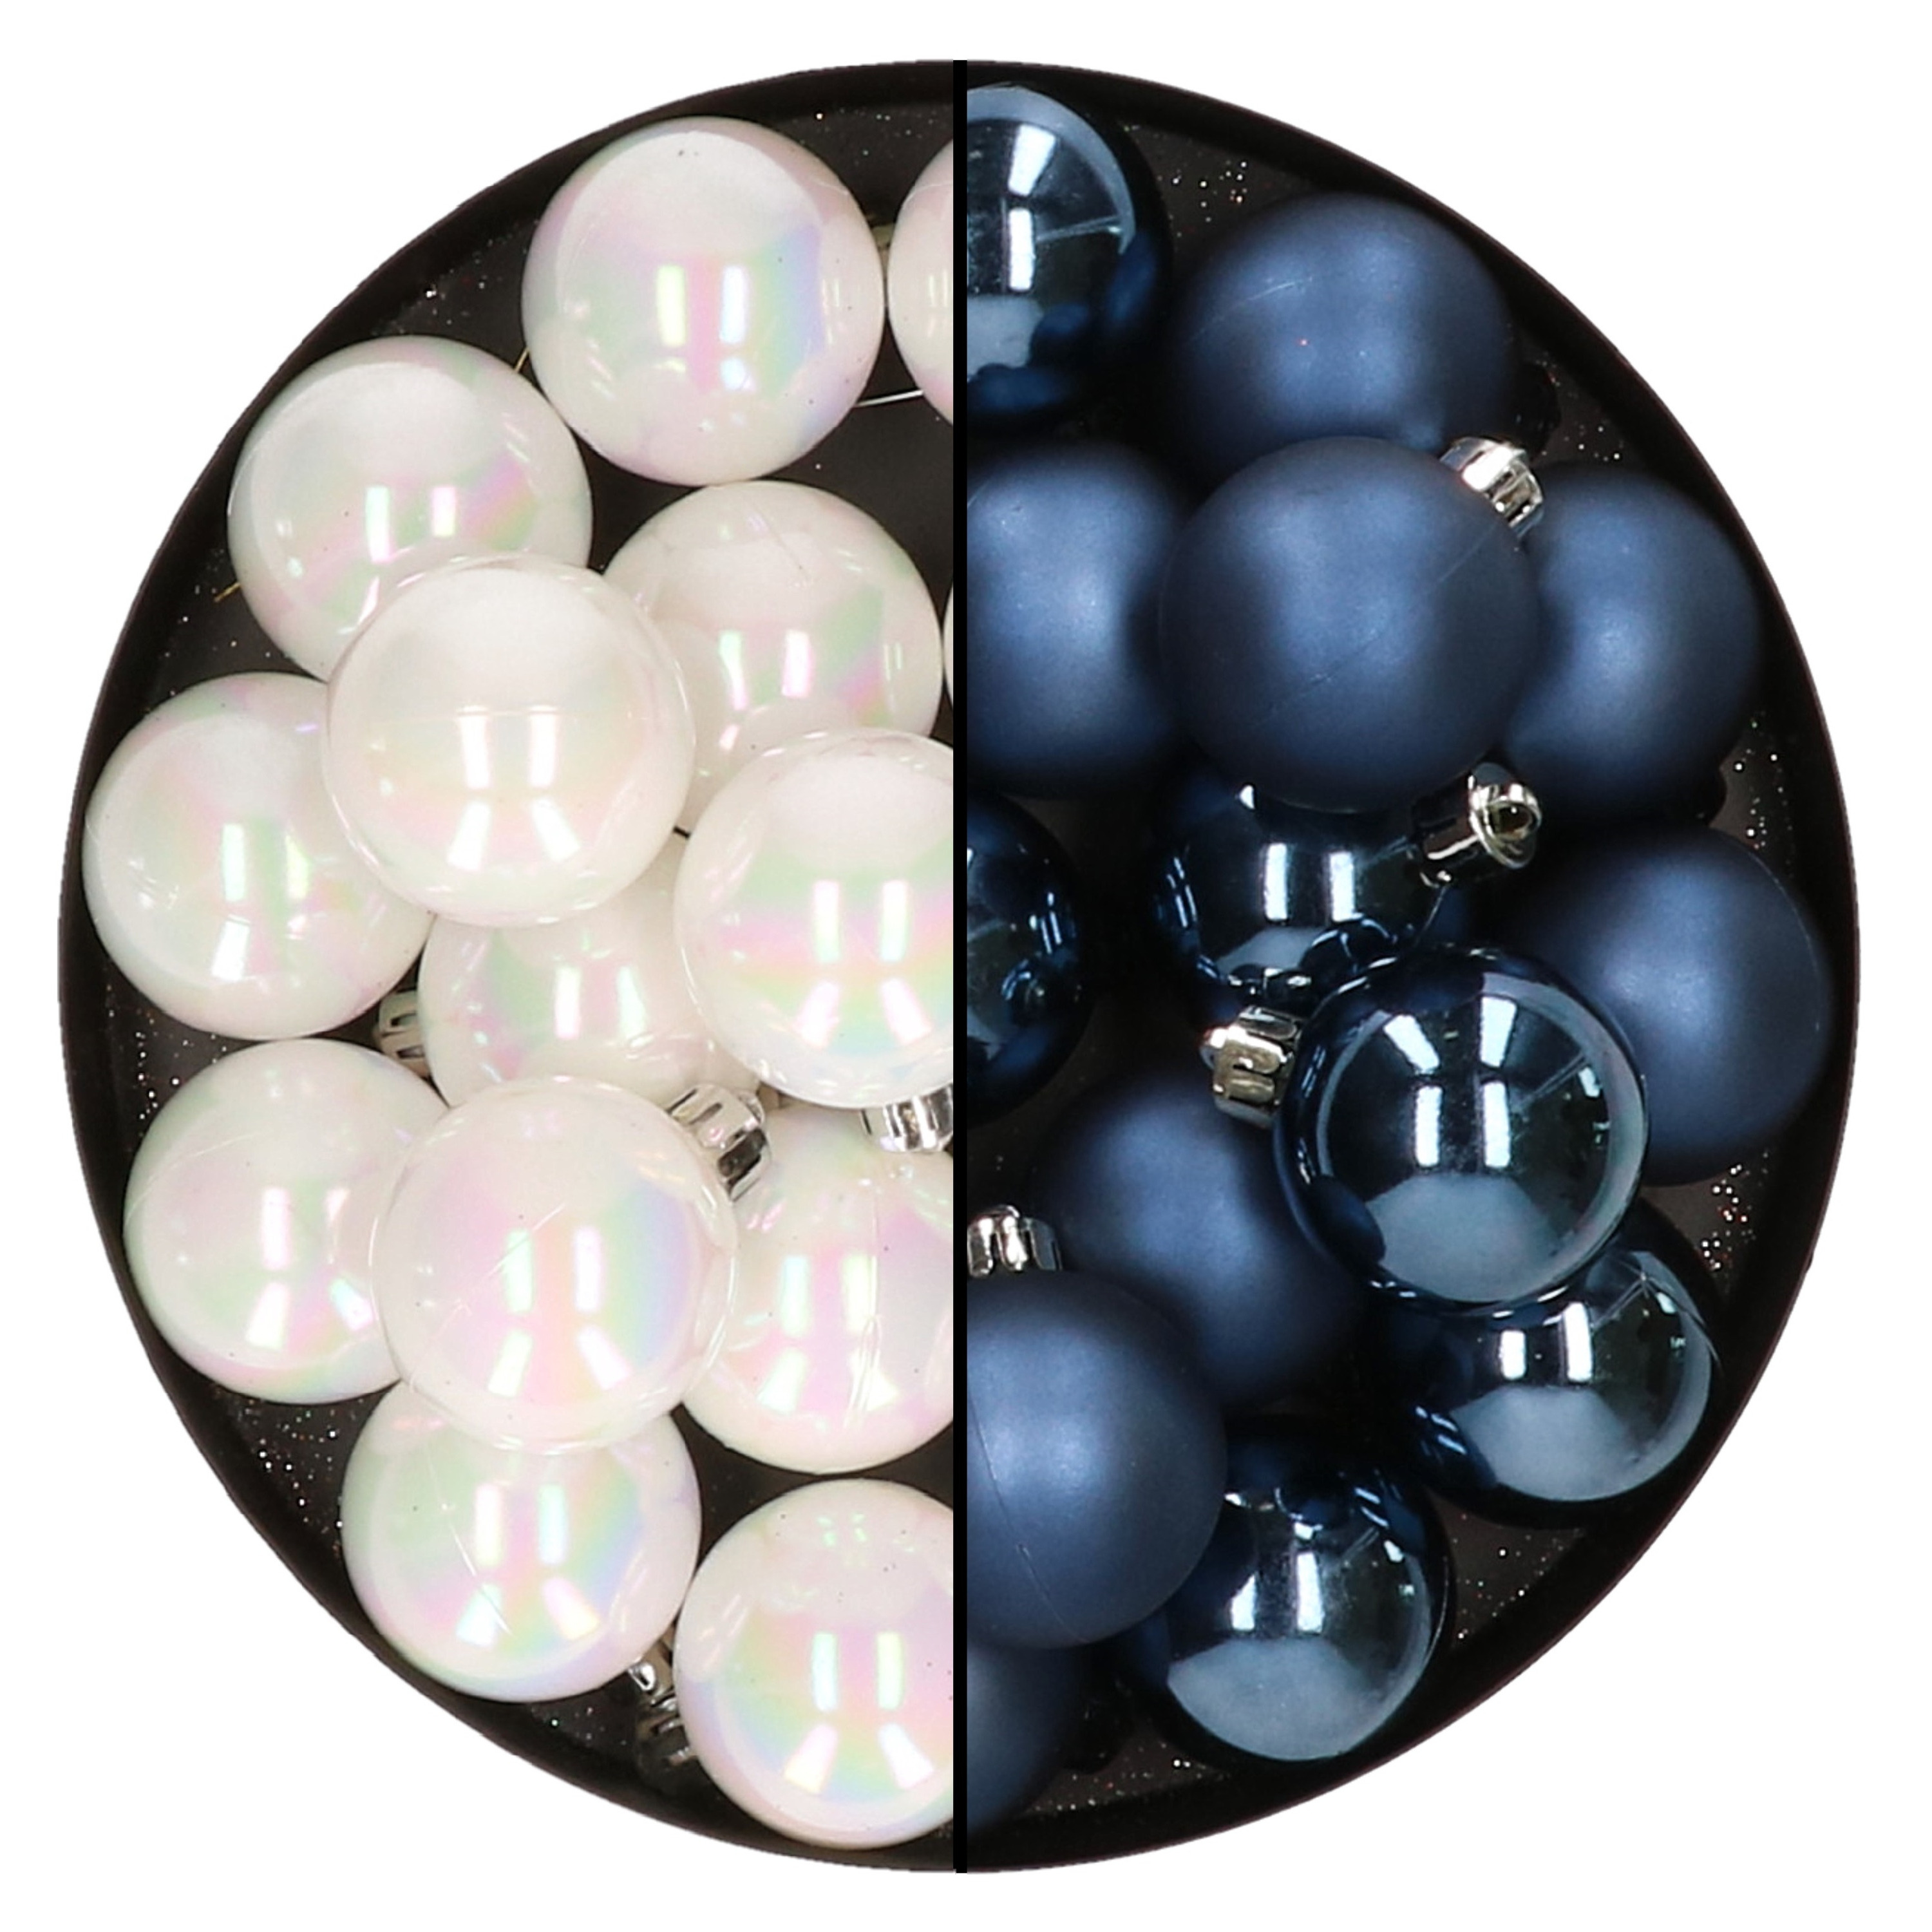 32x stuks kunststof kerstballen mix van parelmoer wit en donkerblauw 4 cm